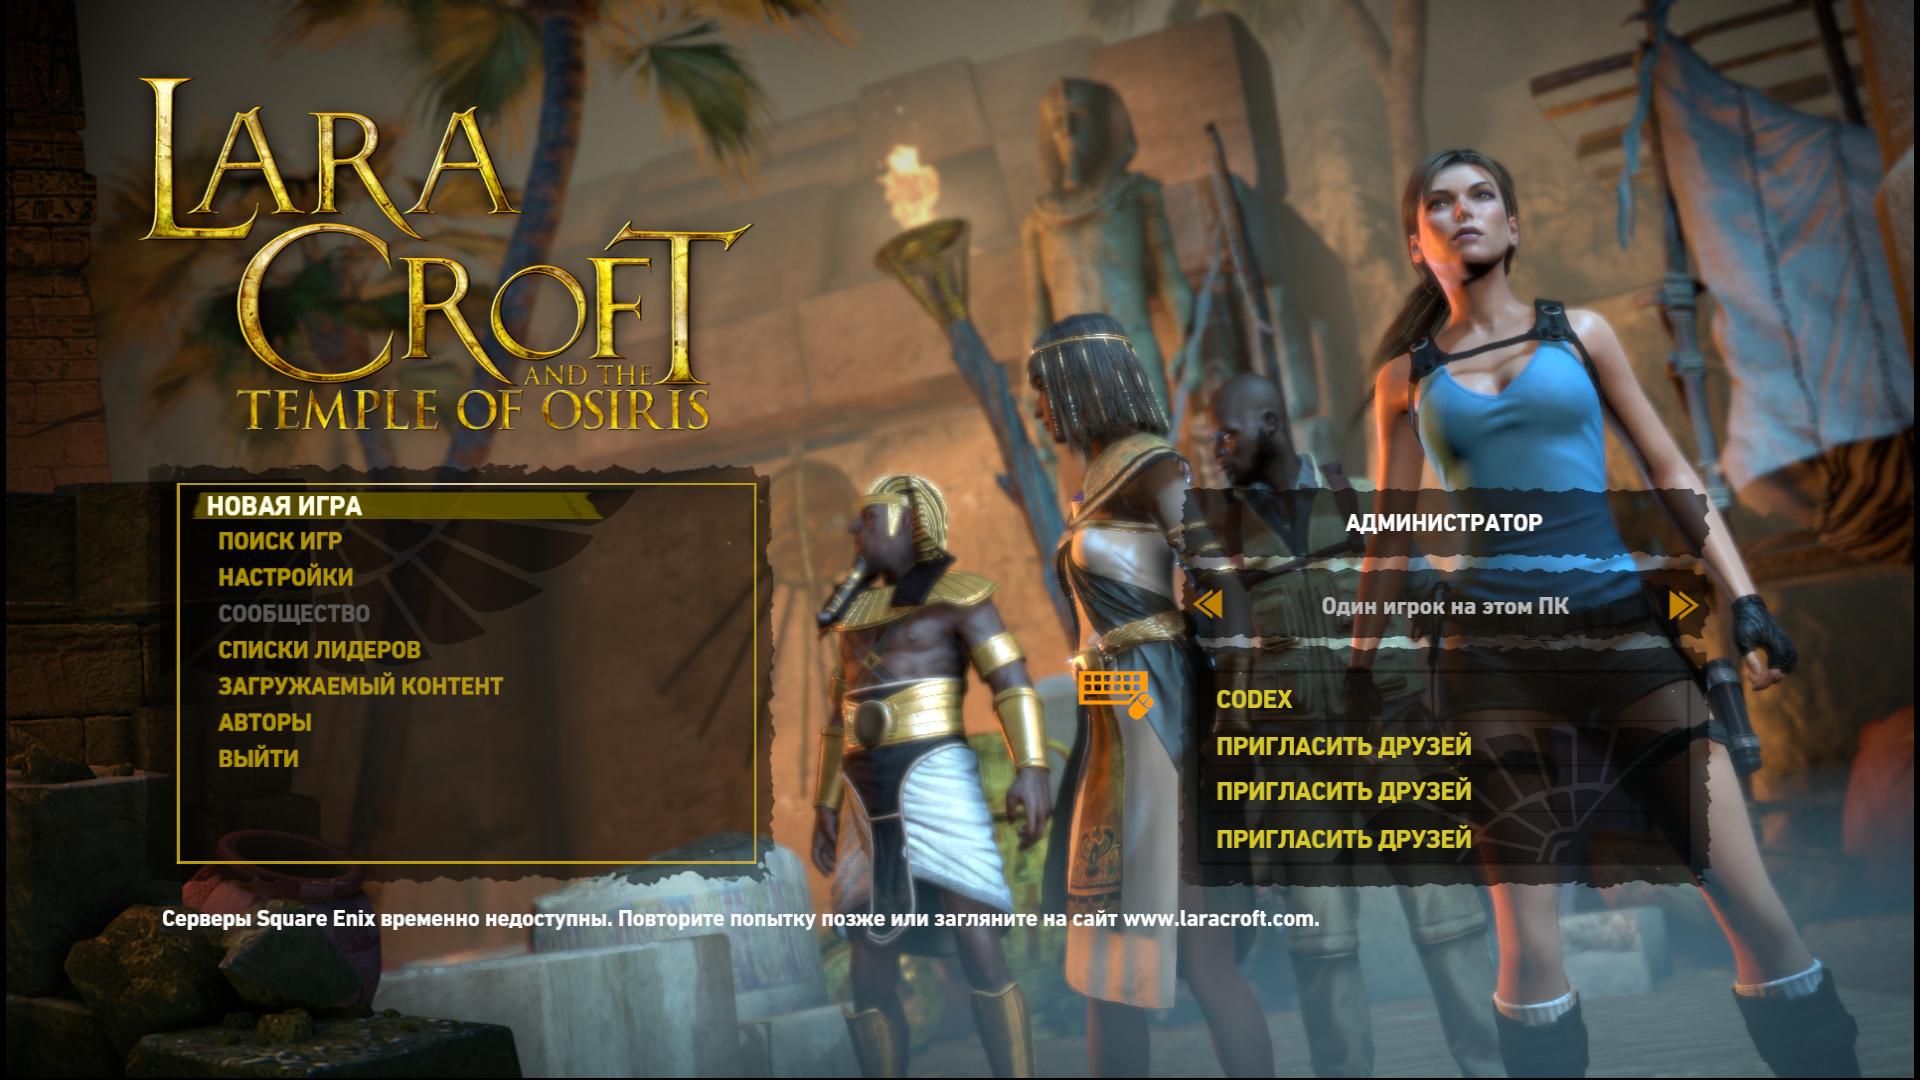 Lara croft and the temple of osiris в стиме фото 38